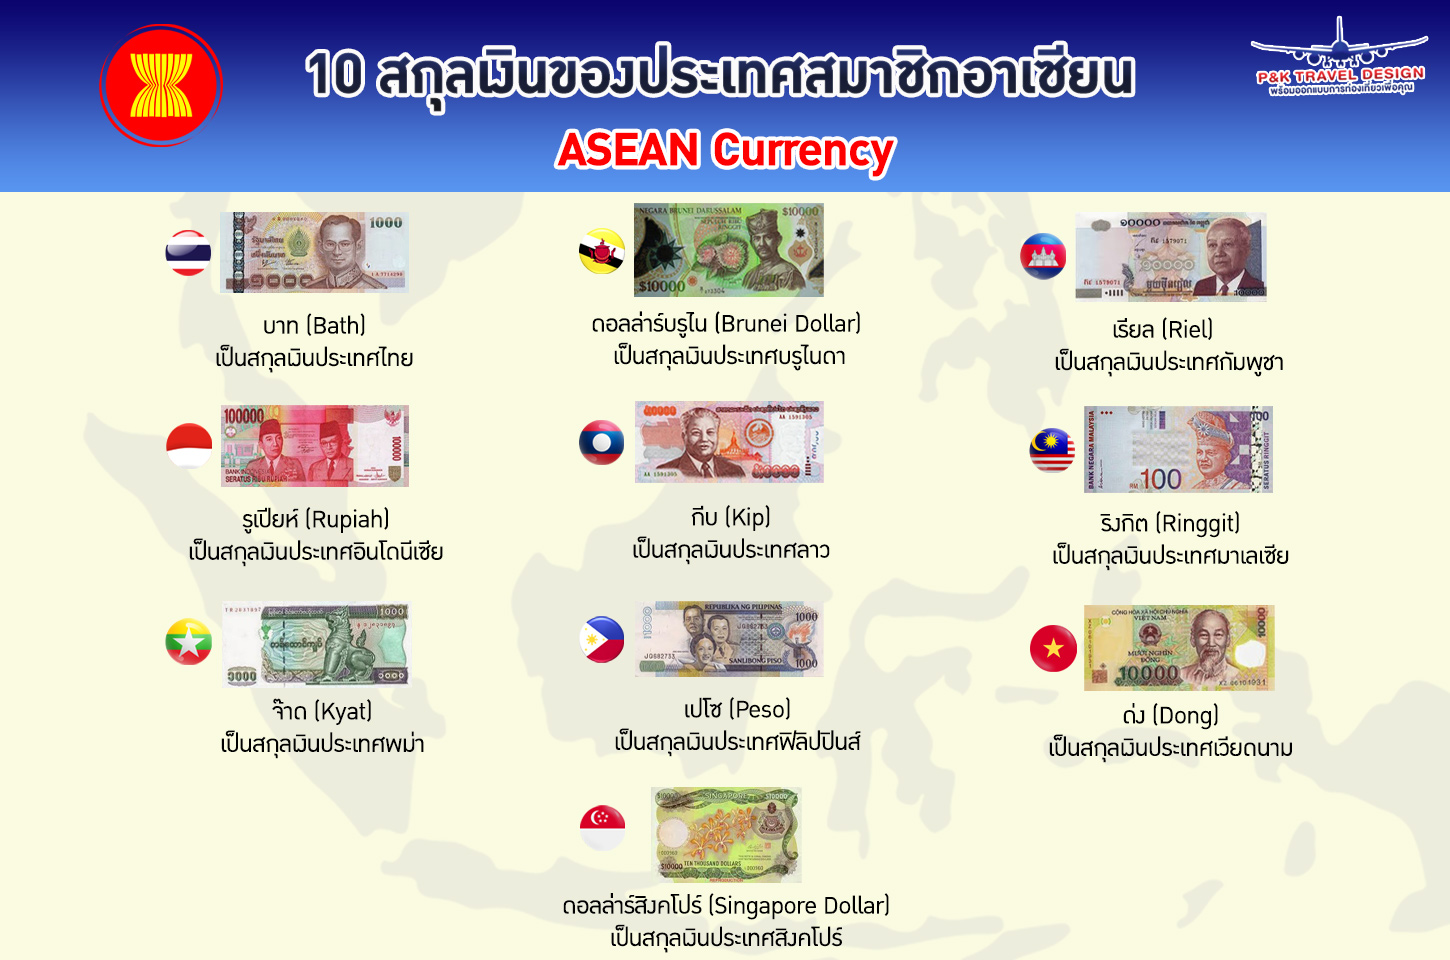 10 สกุลเงินของประเทศสมาชิกอาเซียน!